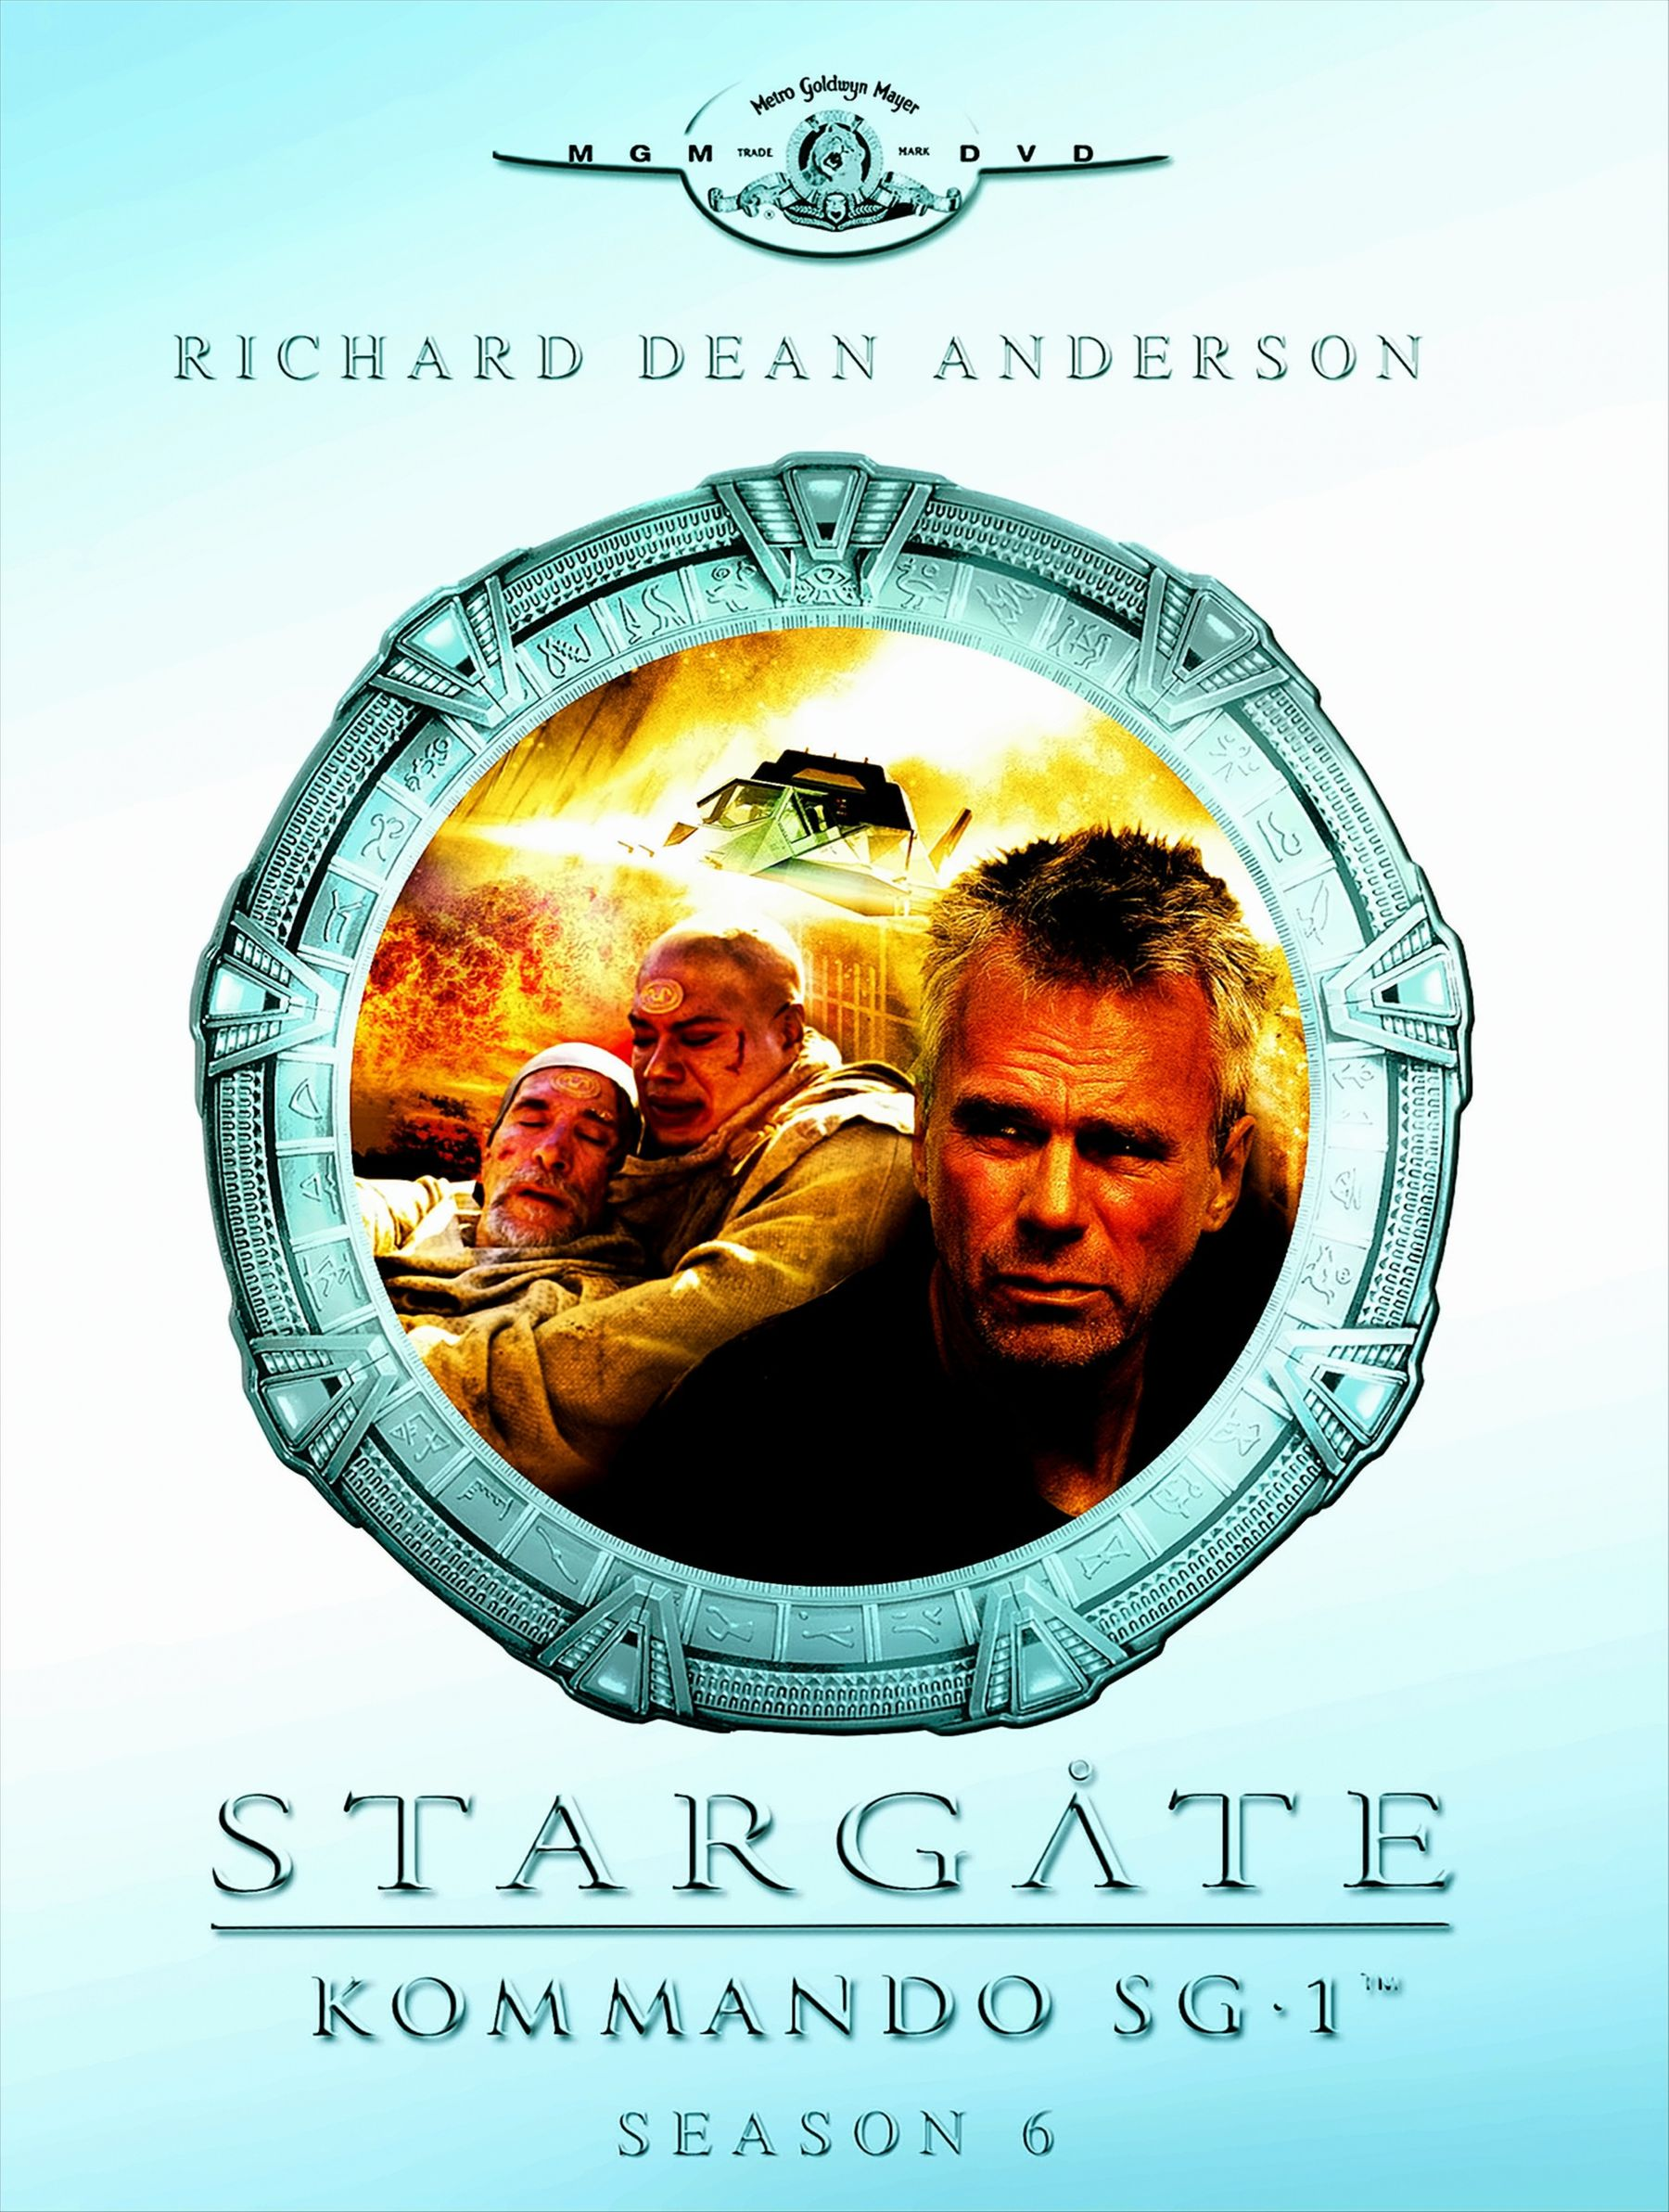 Stargate Kommando DVD Season 06 DVDs) SG-1 - (6